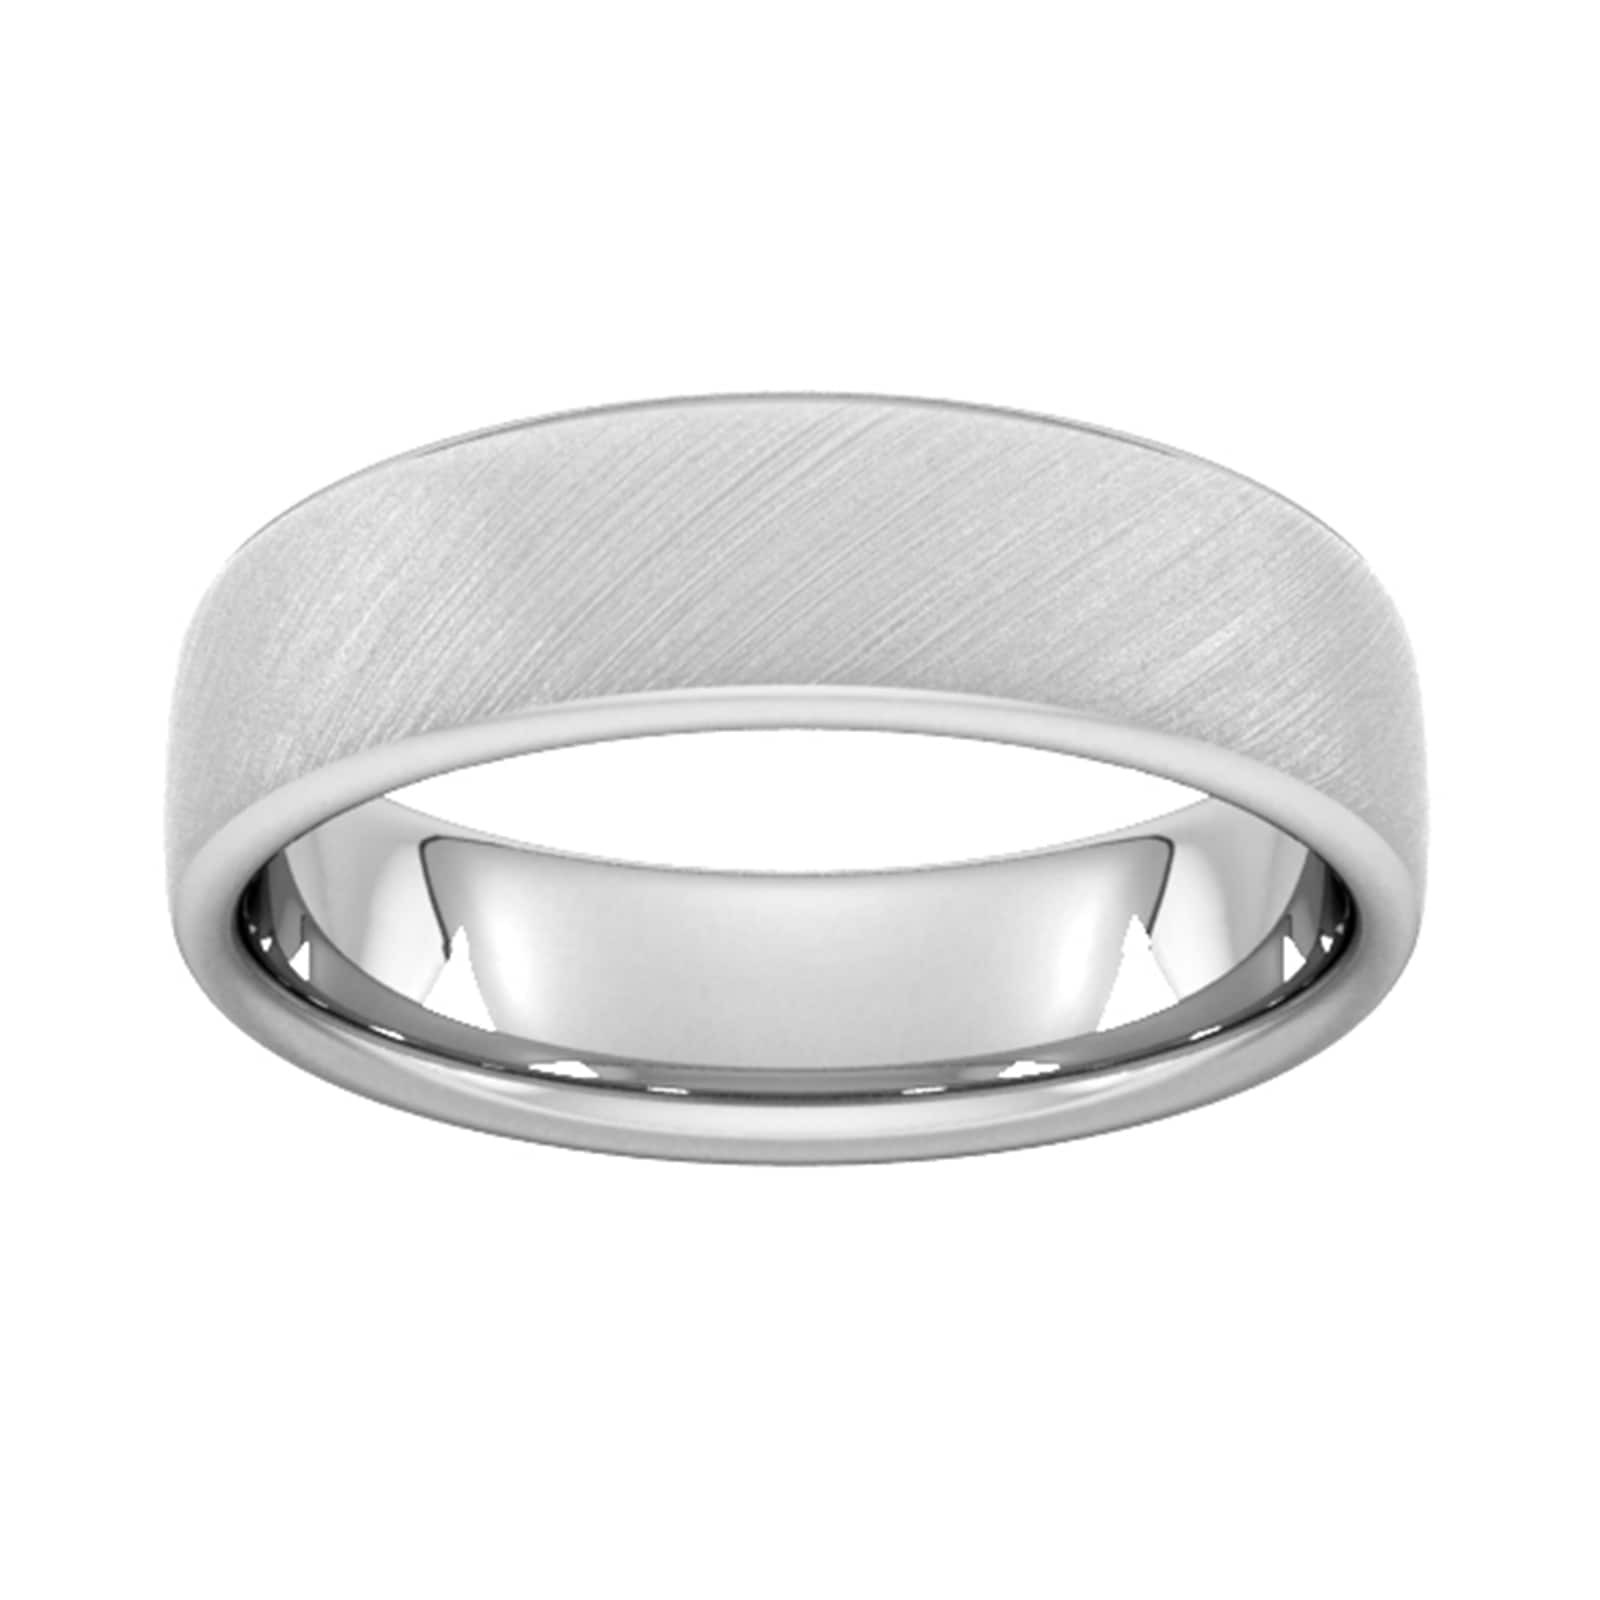 6mm Slight Court Extra Heavy Diagonal Matt Finish Wedding Ring In 950 Palladium - Ring Size R